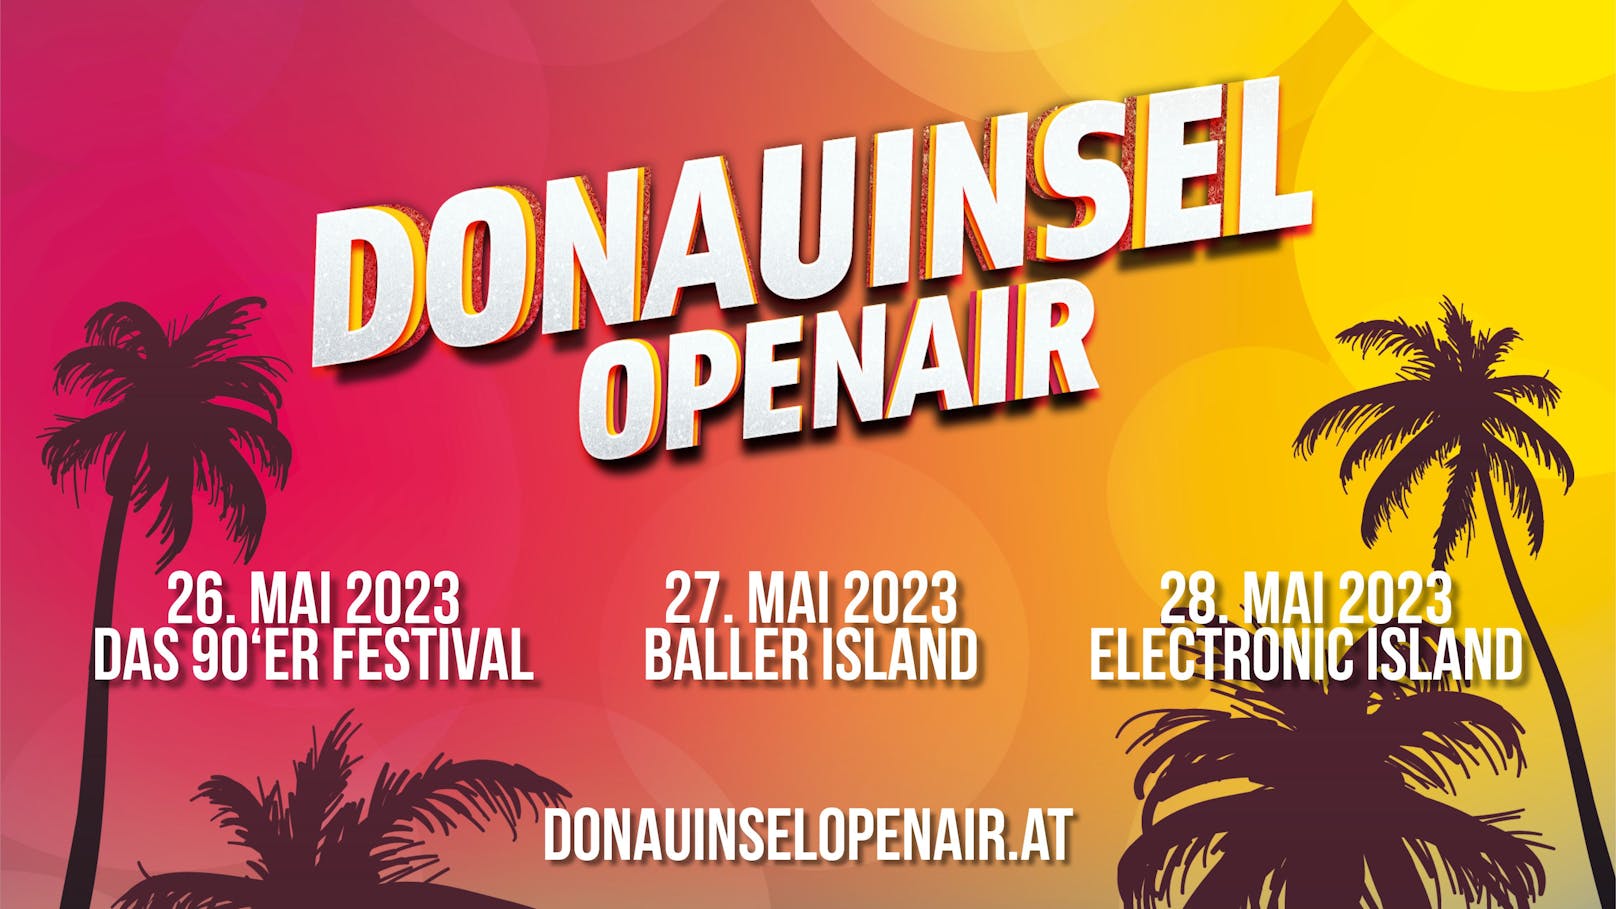 Die heimischen Festivallovers kommen dieses Jahr voll auf ihre Kosten: Von 26. bis 28. Mai steigt ein neues Großevent in Wien - das Donauinsel Open Air Festival.